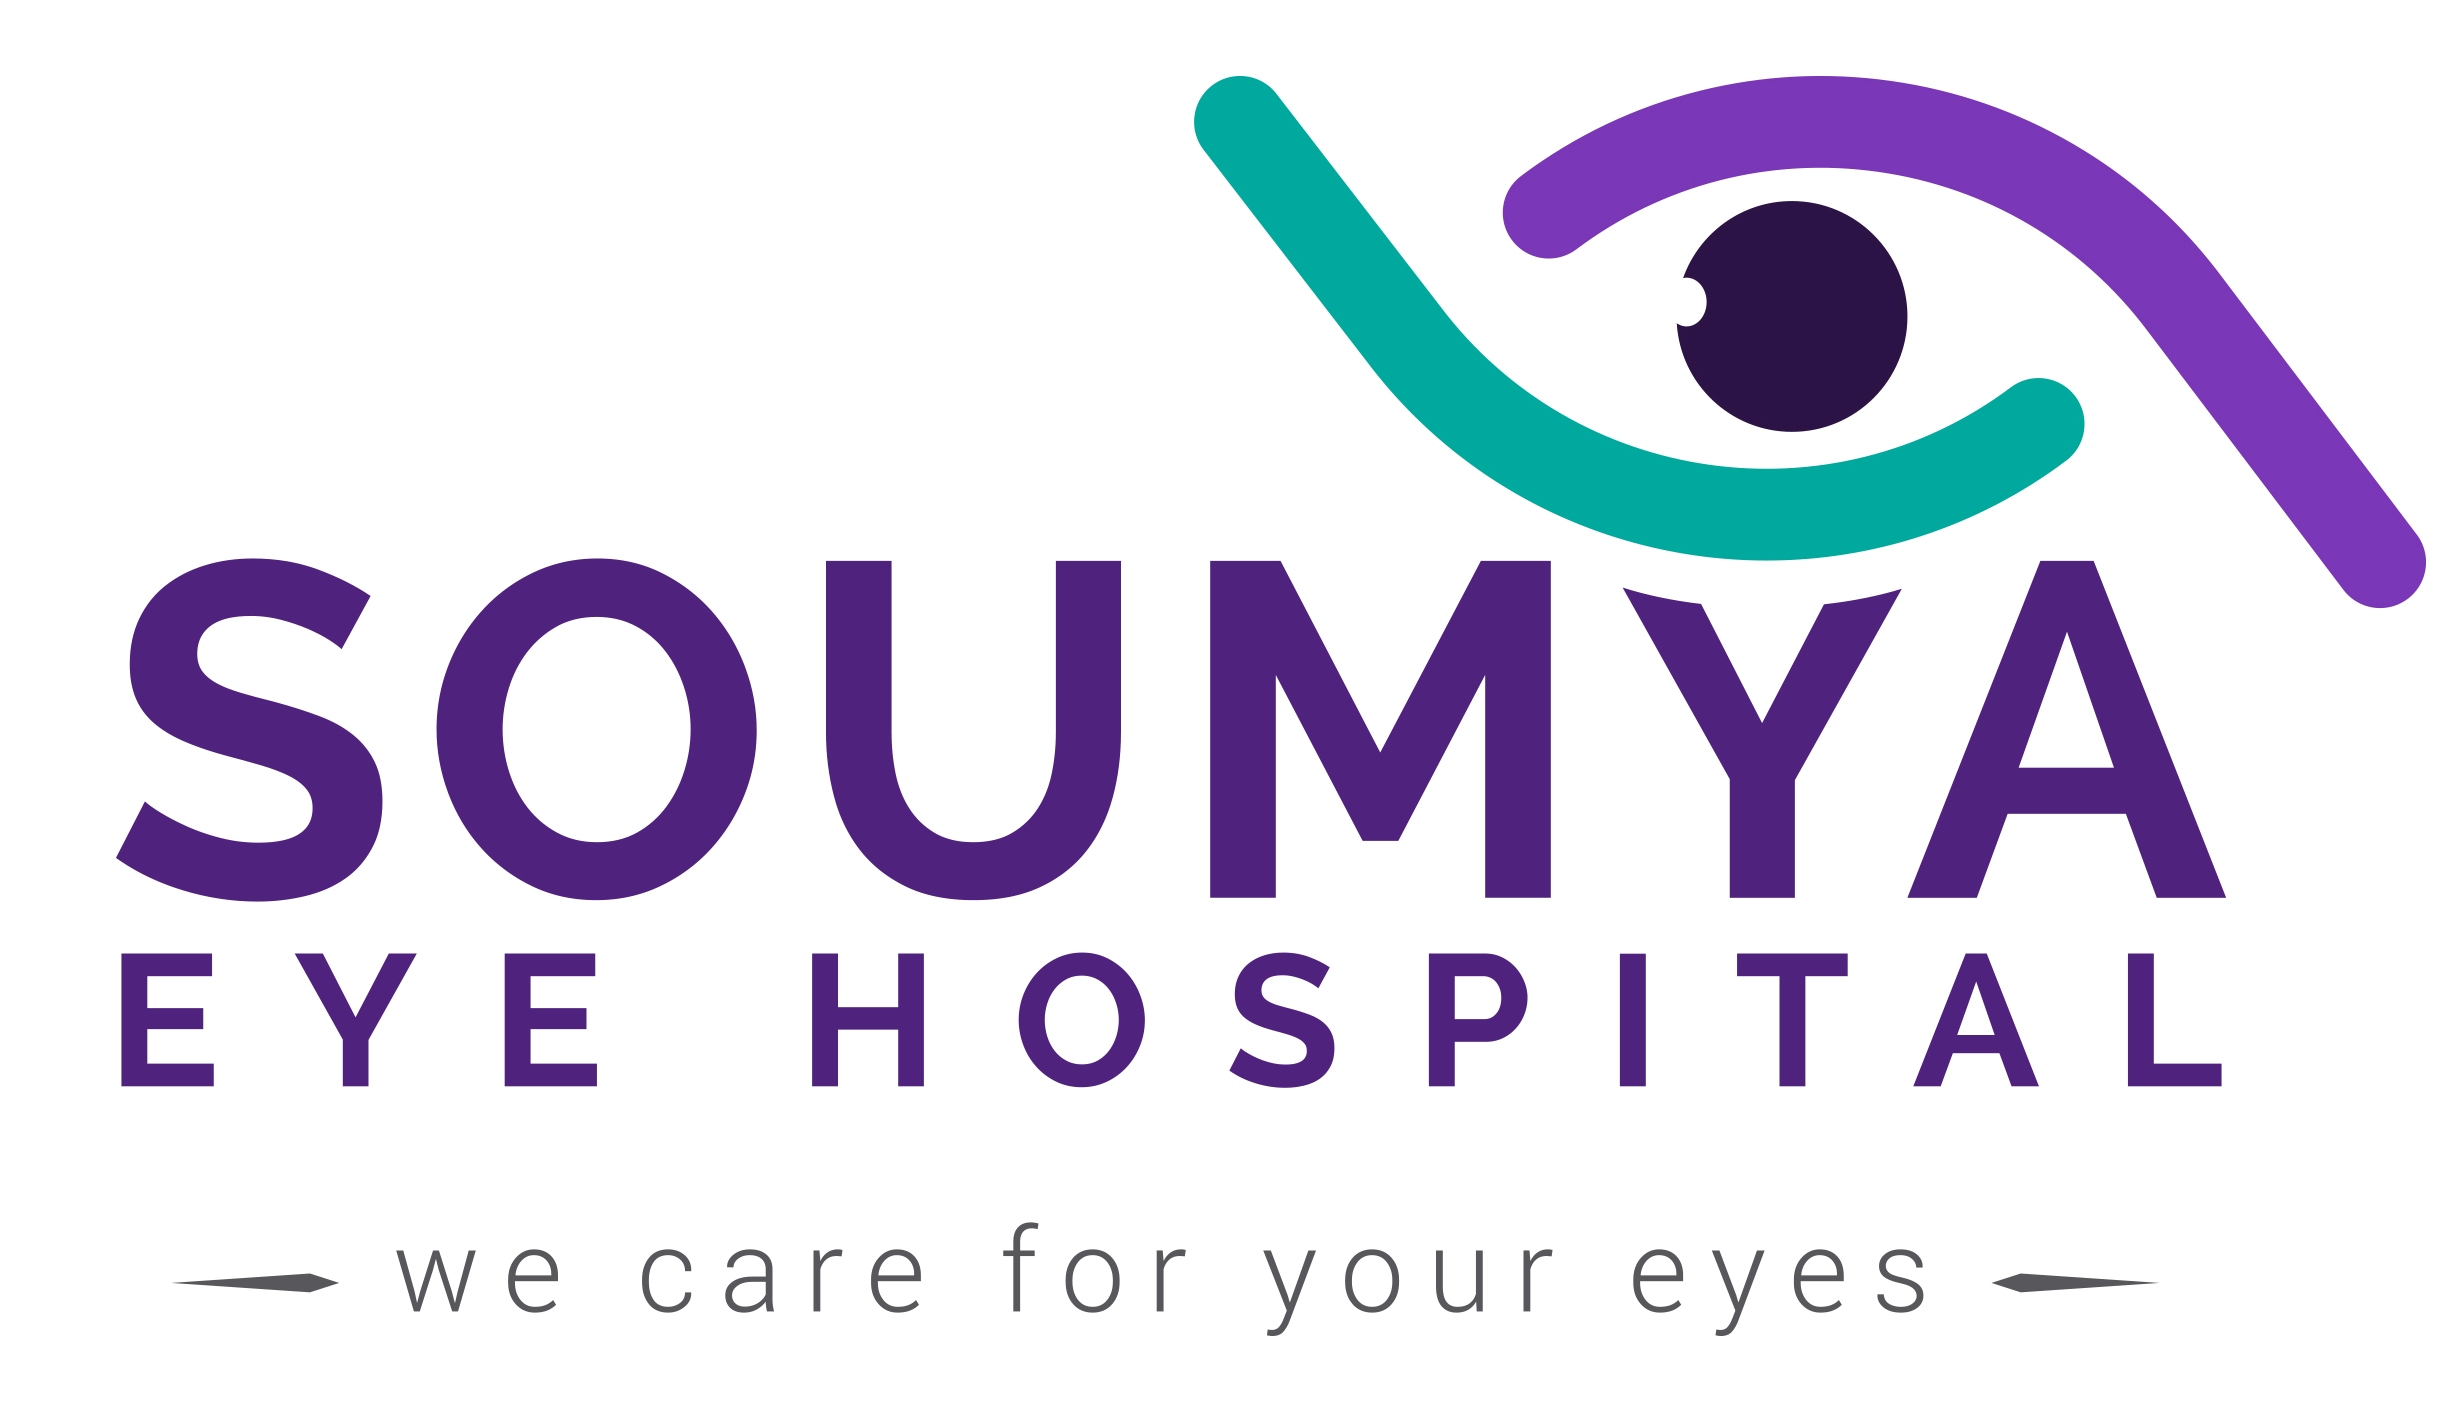 Soumya Eye Hospital|Clinics|Medical Services